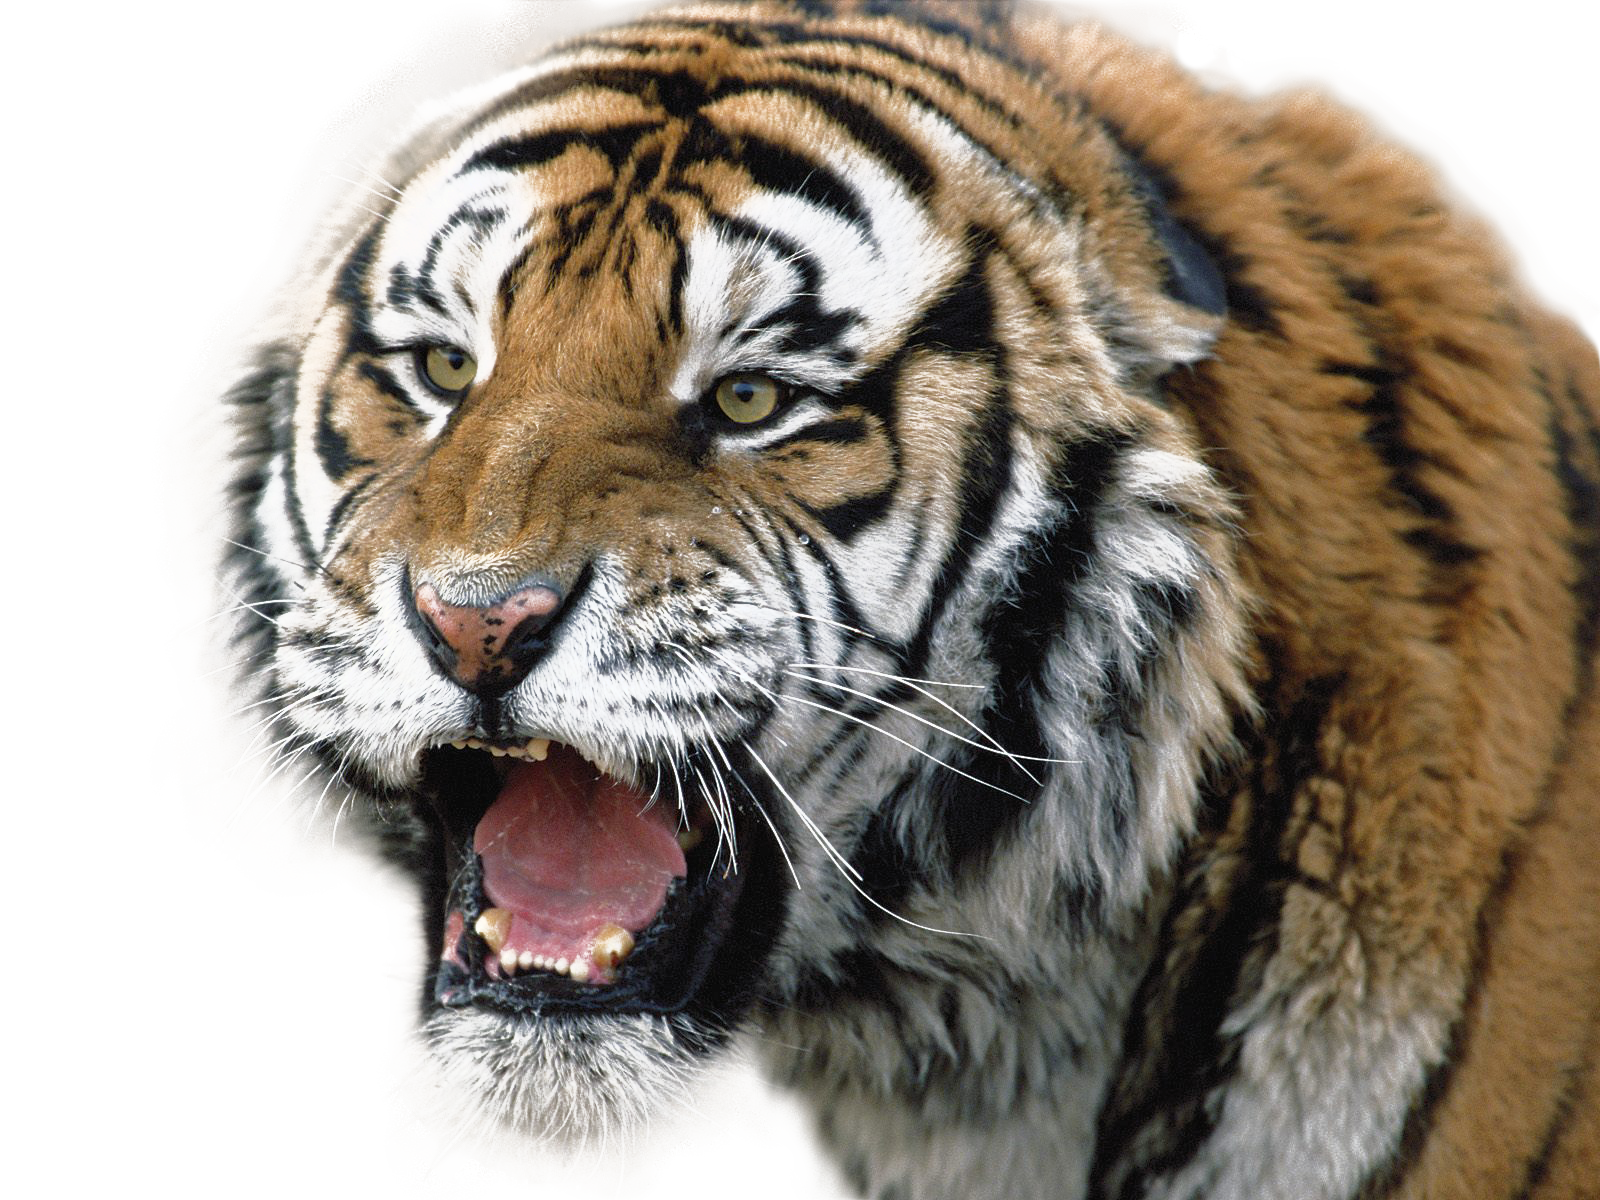 Imagen Transparente de la cara del tigre